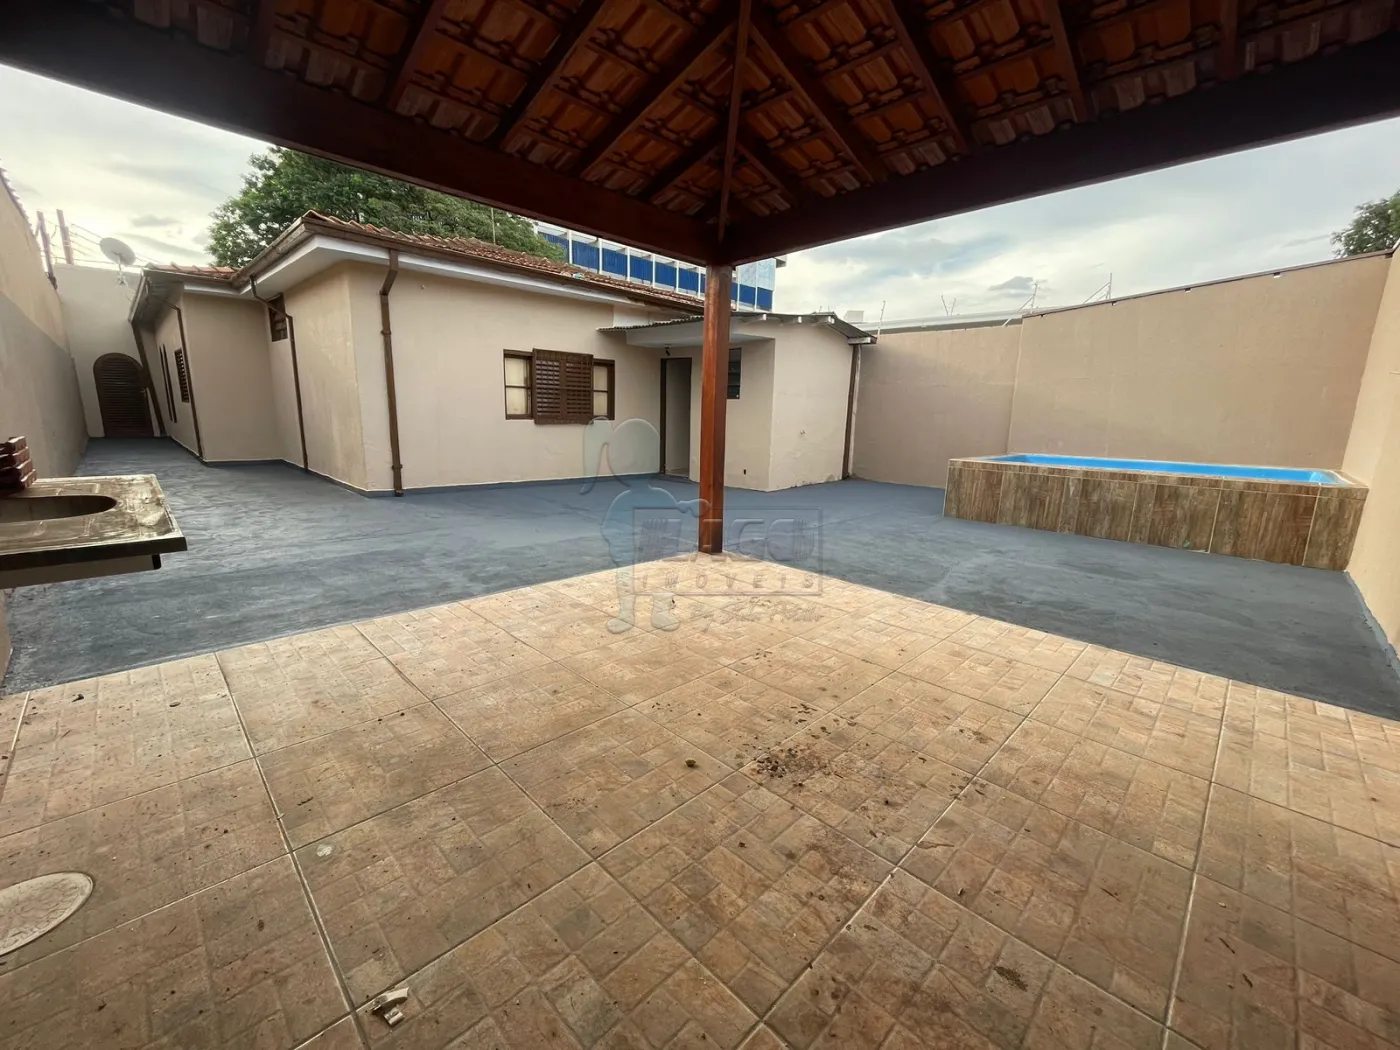 Comprar Casa / Padrão em Ribeirão Preto R$ 320.000,00 - Foto 3